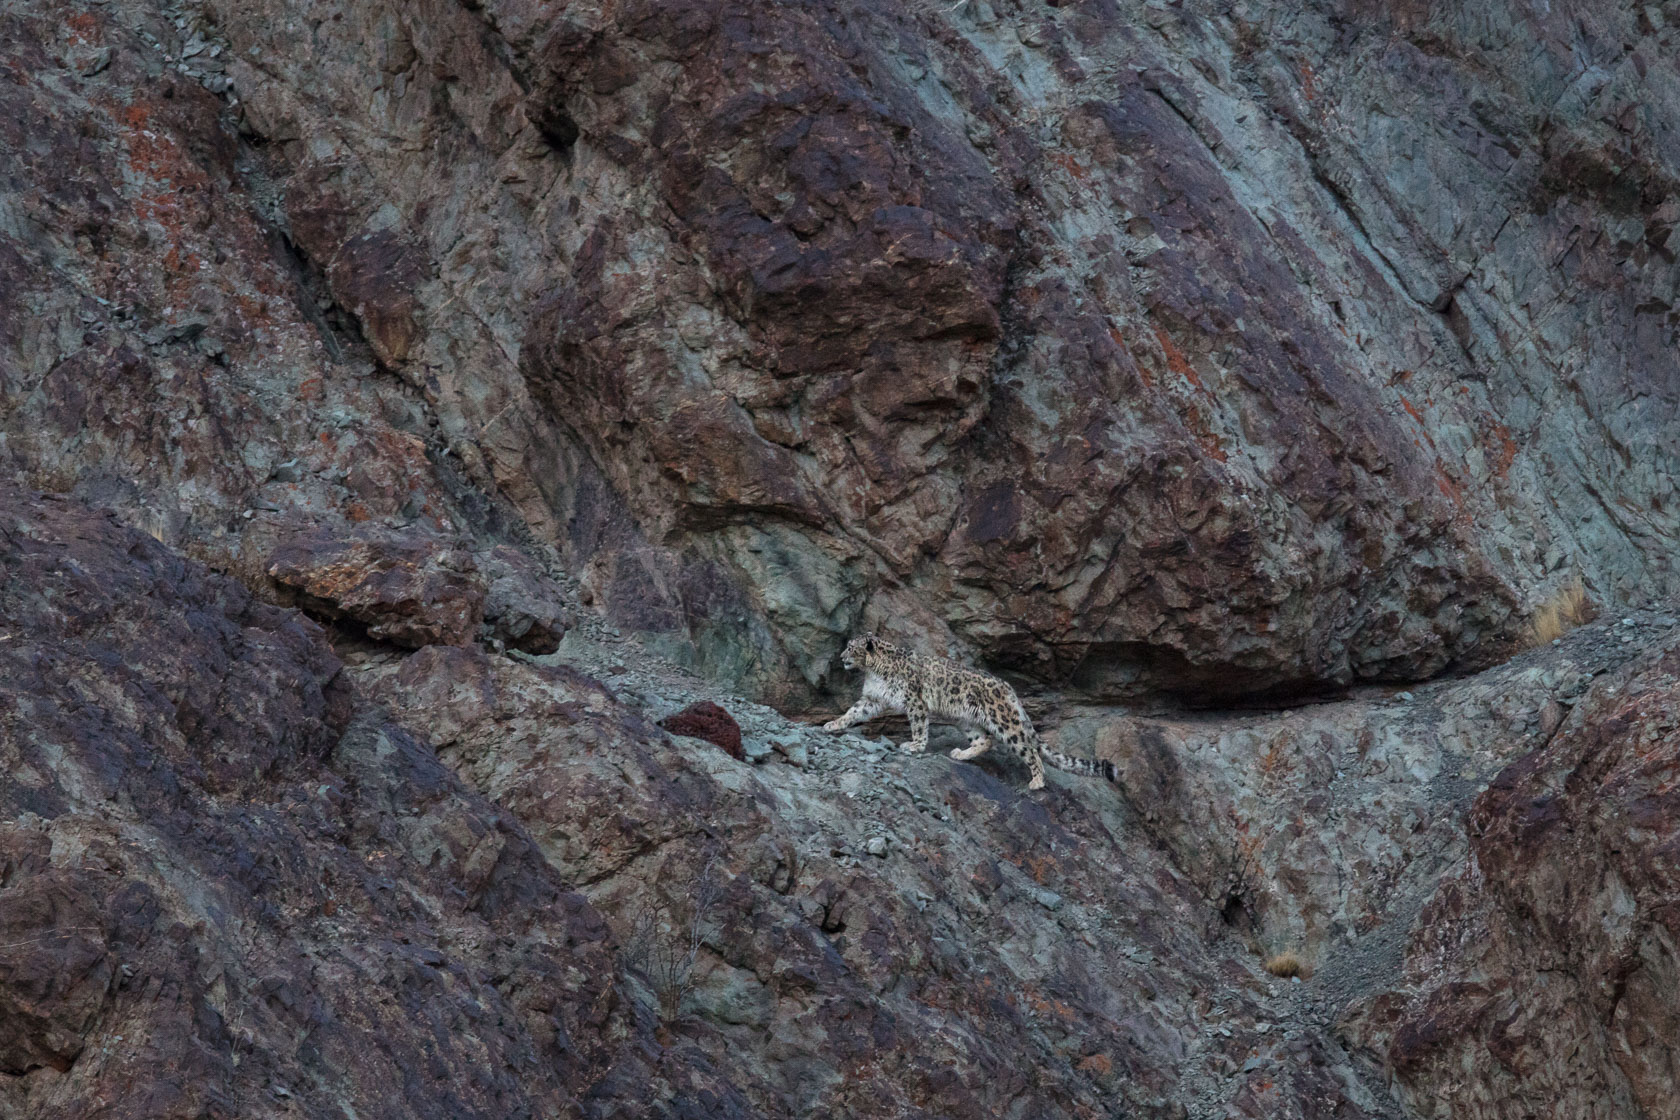 panthère des neiges (Panthera uncia) sur une vire, au Ladakh, en Inde